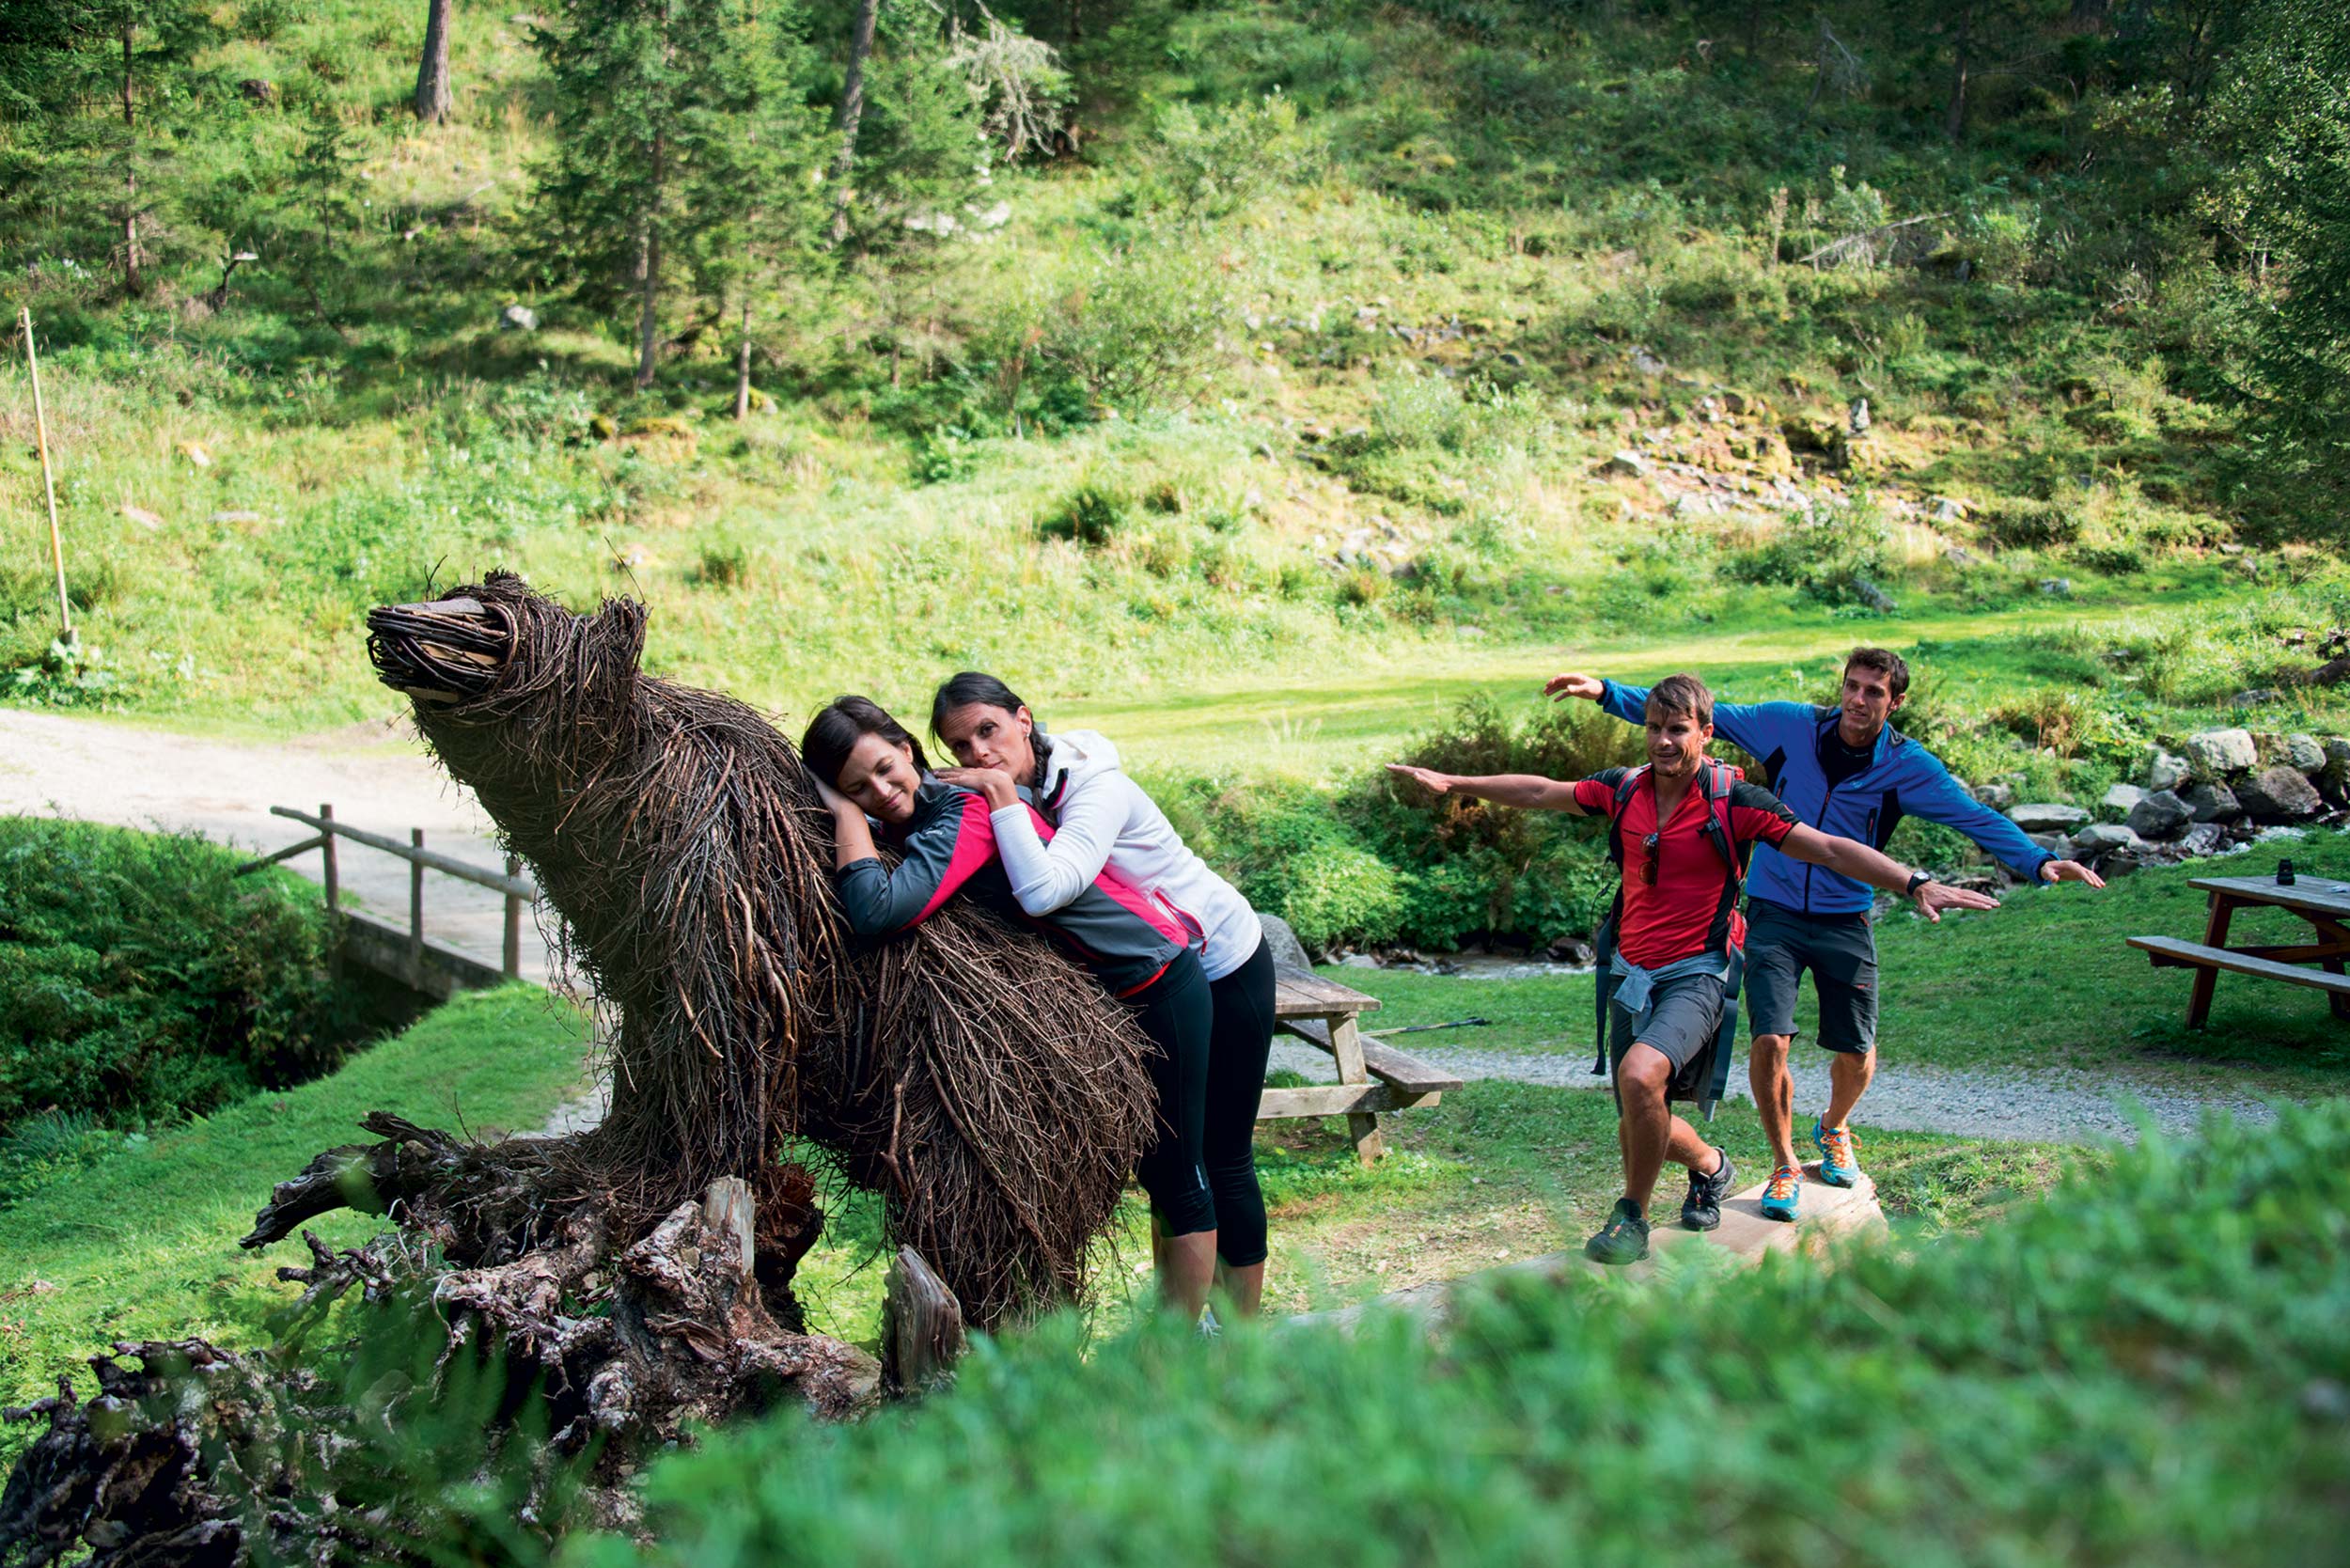 Situazione dell’orso in Trentino: buone pratiche per vivere in sicurezza la natura